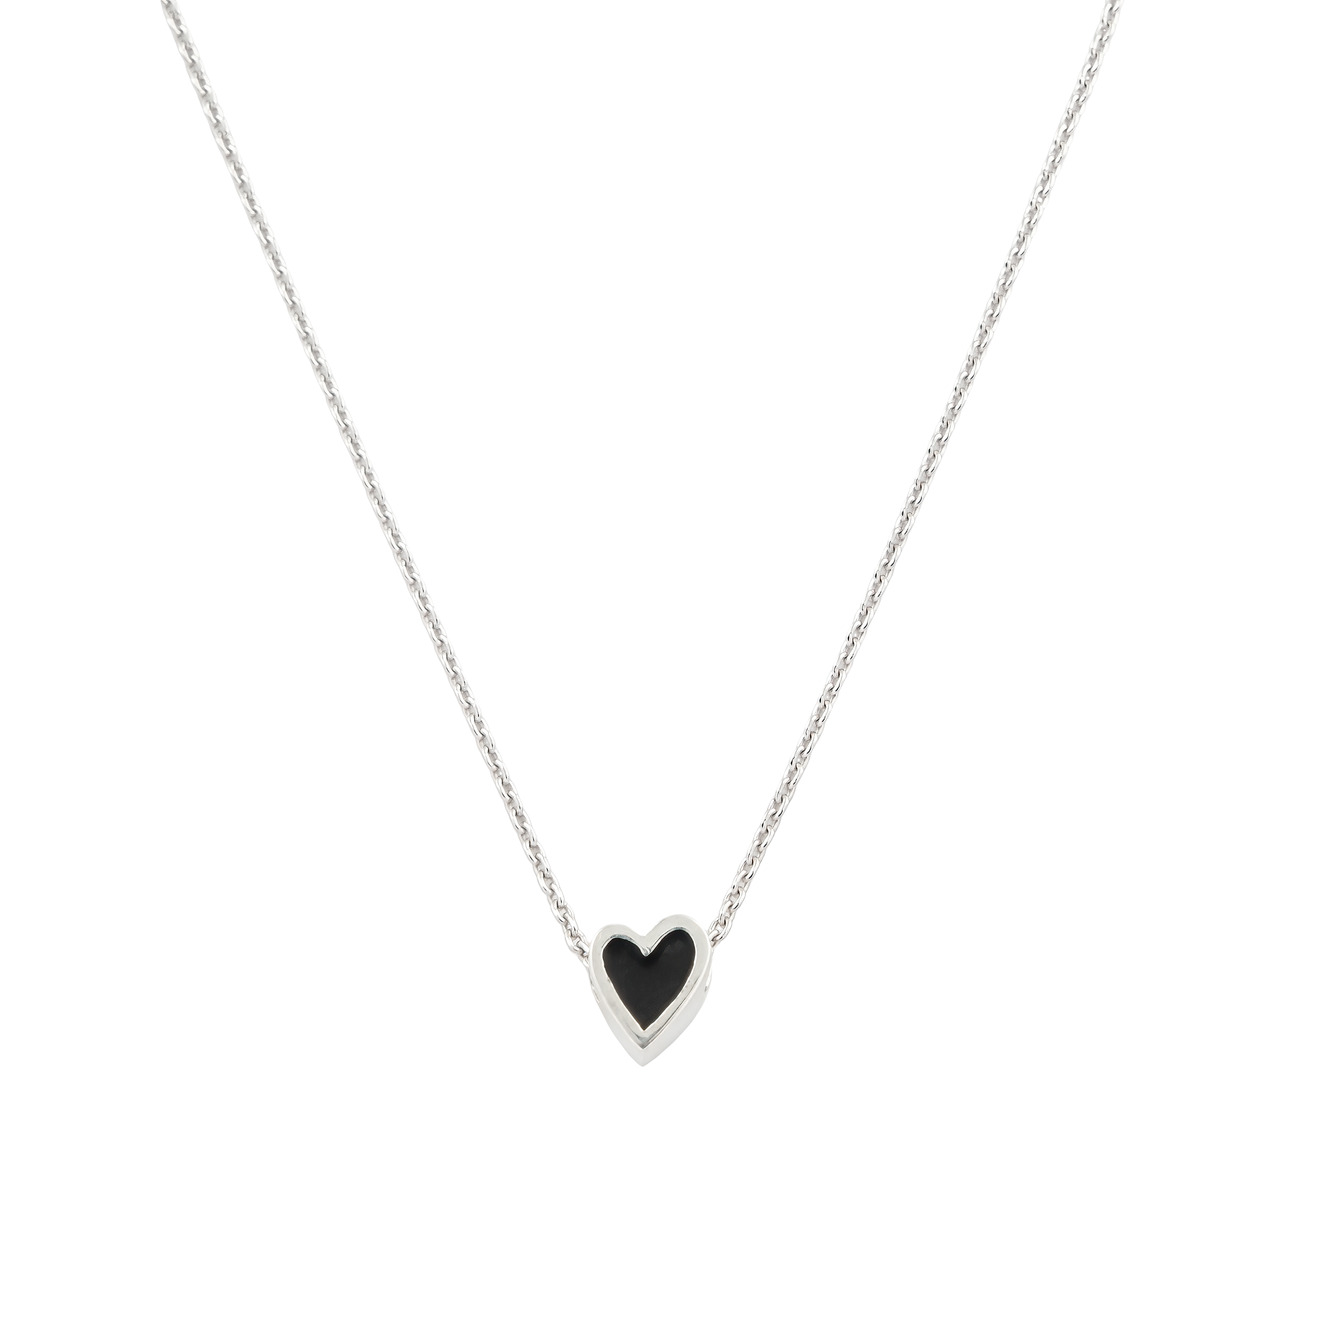 ура jewelry серьги сердца с эмалью УРА jewelry подвеска сердца из серебра на цепочке с черной эмалью